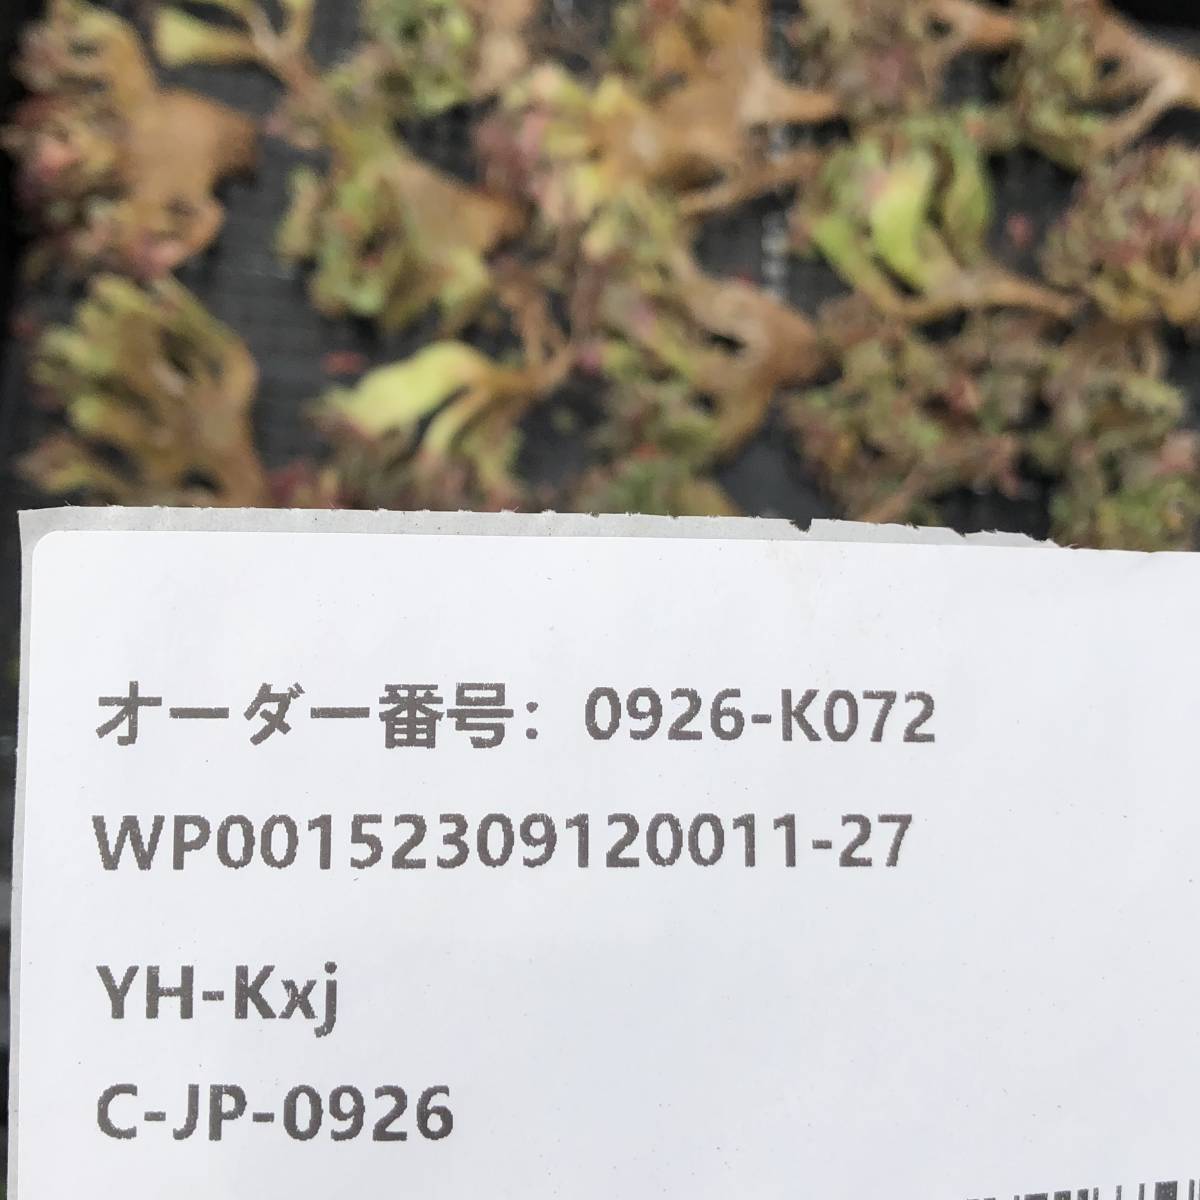 多肉植物22個 0926-K072 ビッグレッド綴化 エケベリア カット苗 _画像3